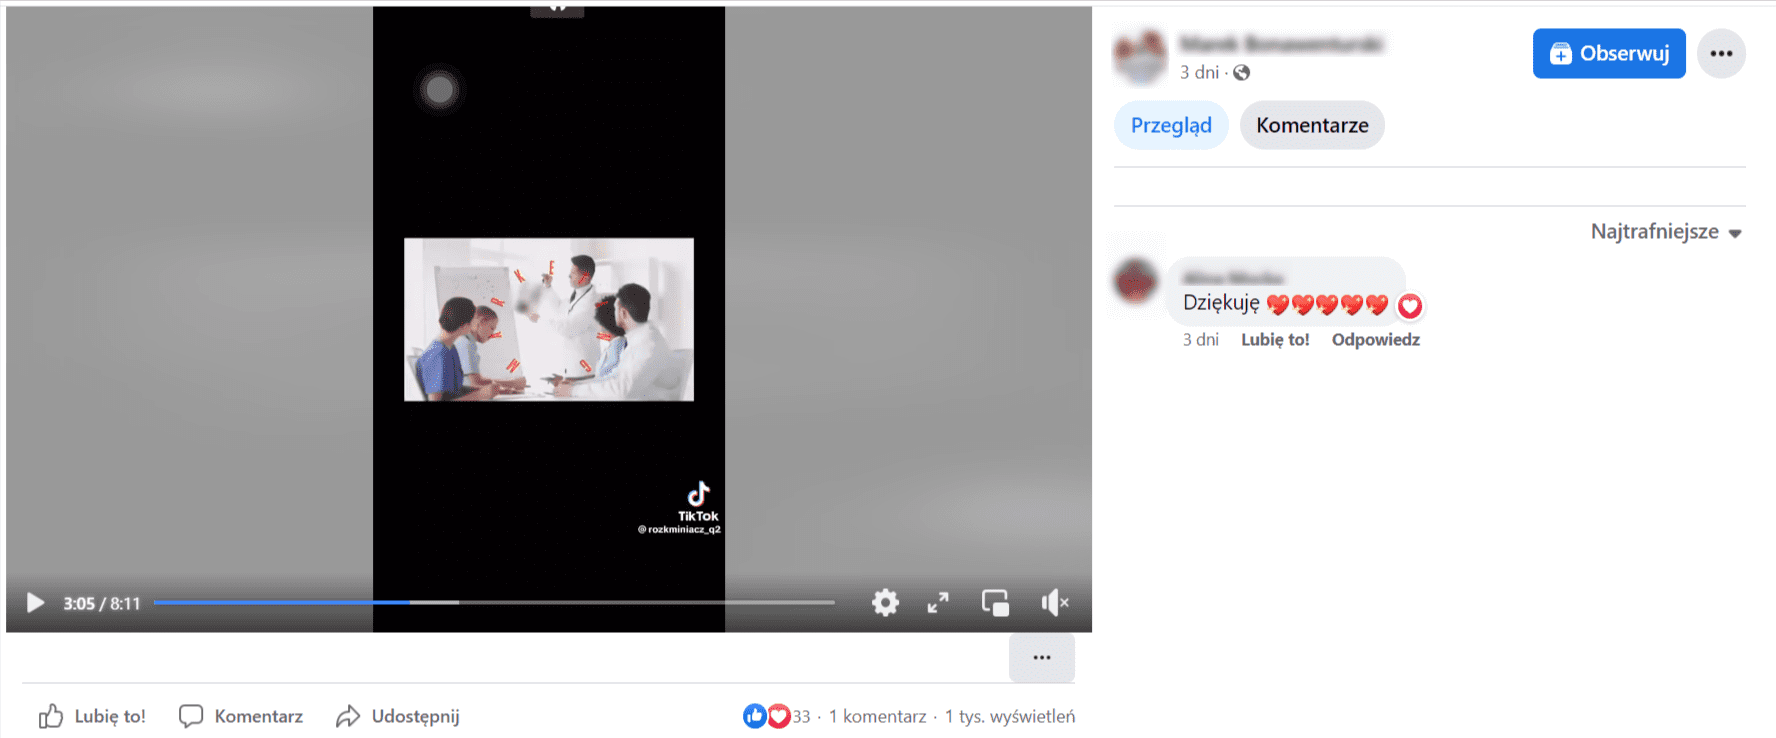 Zrzut ekranu z Facebooka, na którym opublikowano nagranie dotyczące rzekomych powiązań pomiędzy szczepieniami a autyzmem. Liczba wyświetleń: 1 tys., liczba komentarzy: 1, liczba reakcji: 33.